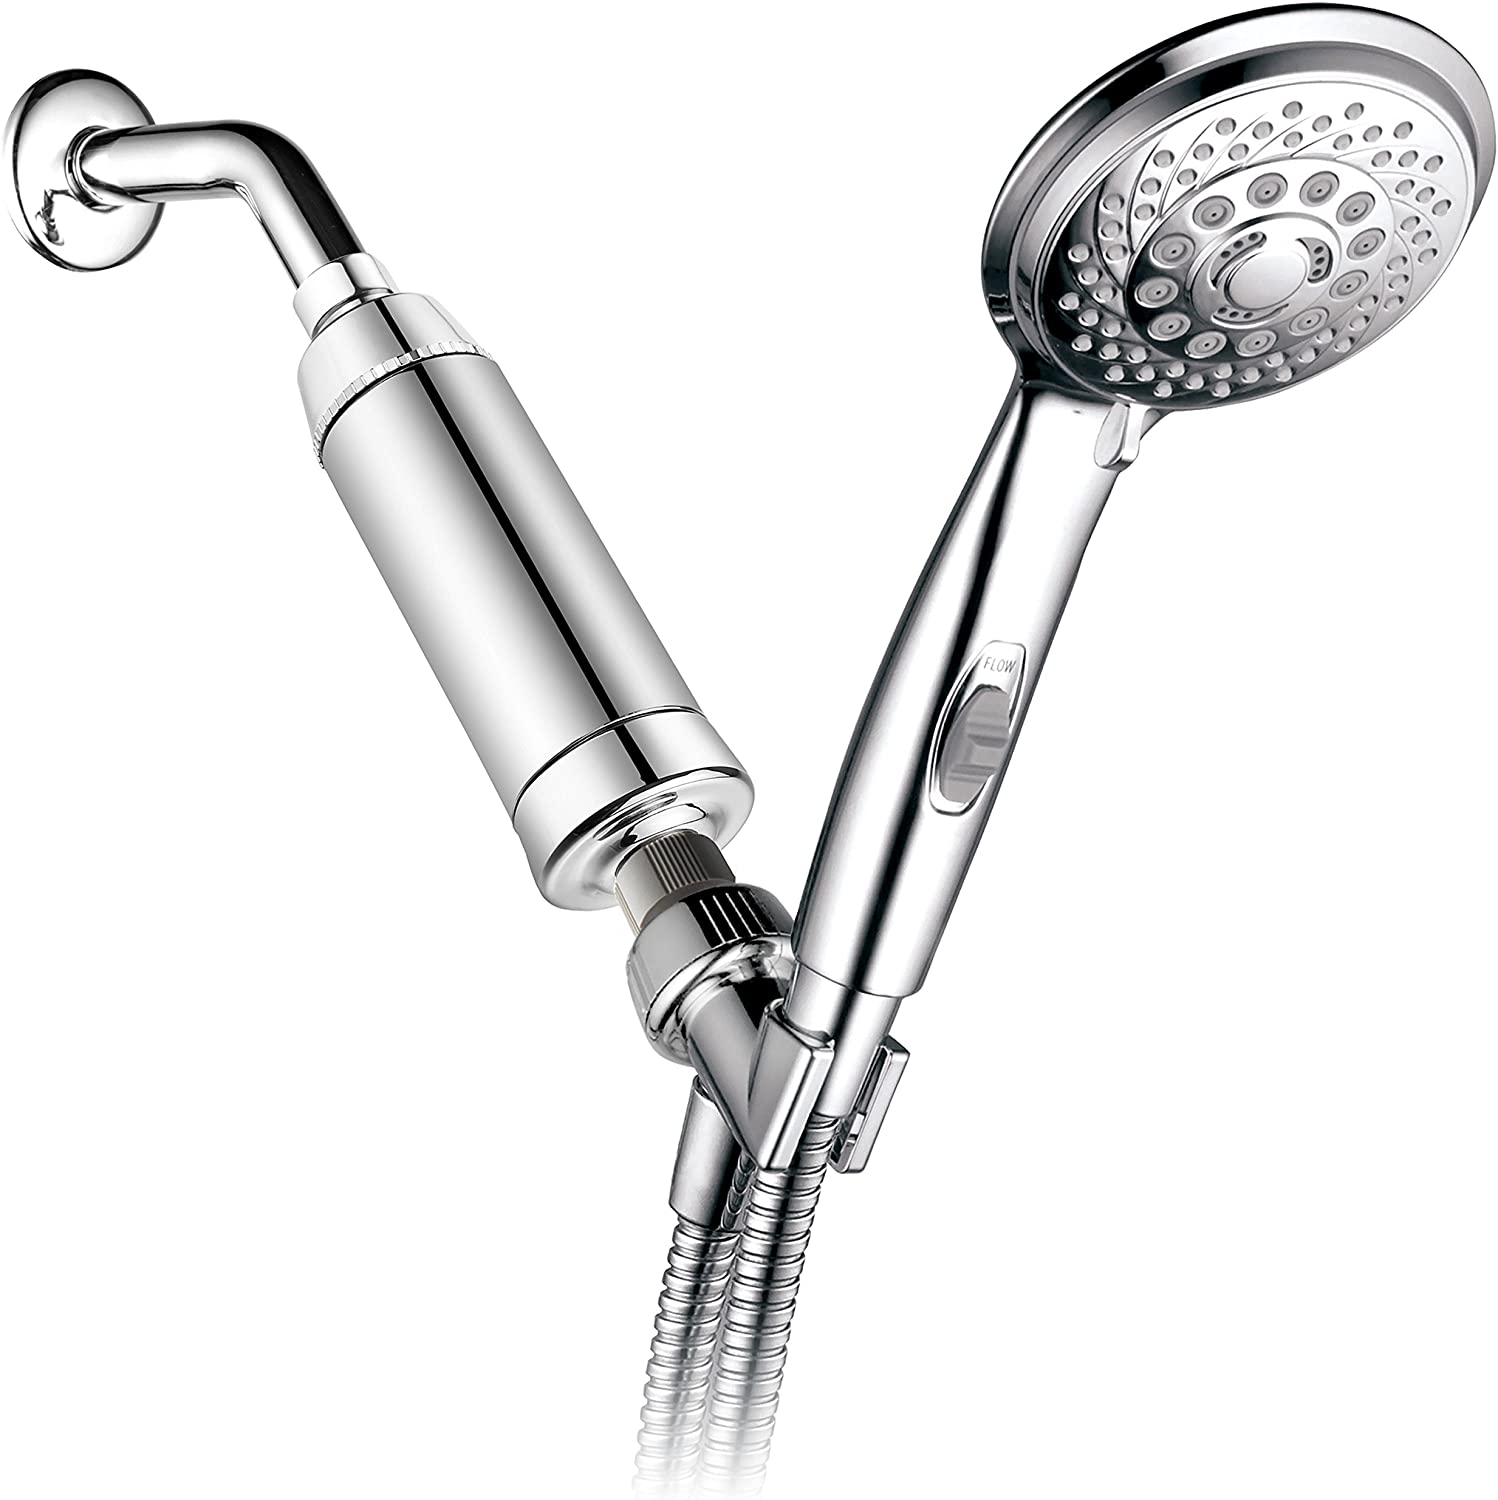 hotelSpa 7-Setting Handheld Shower